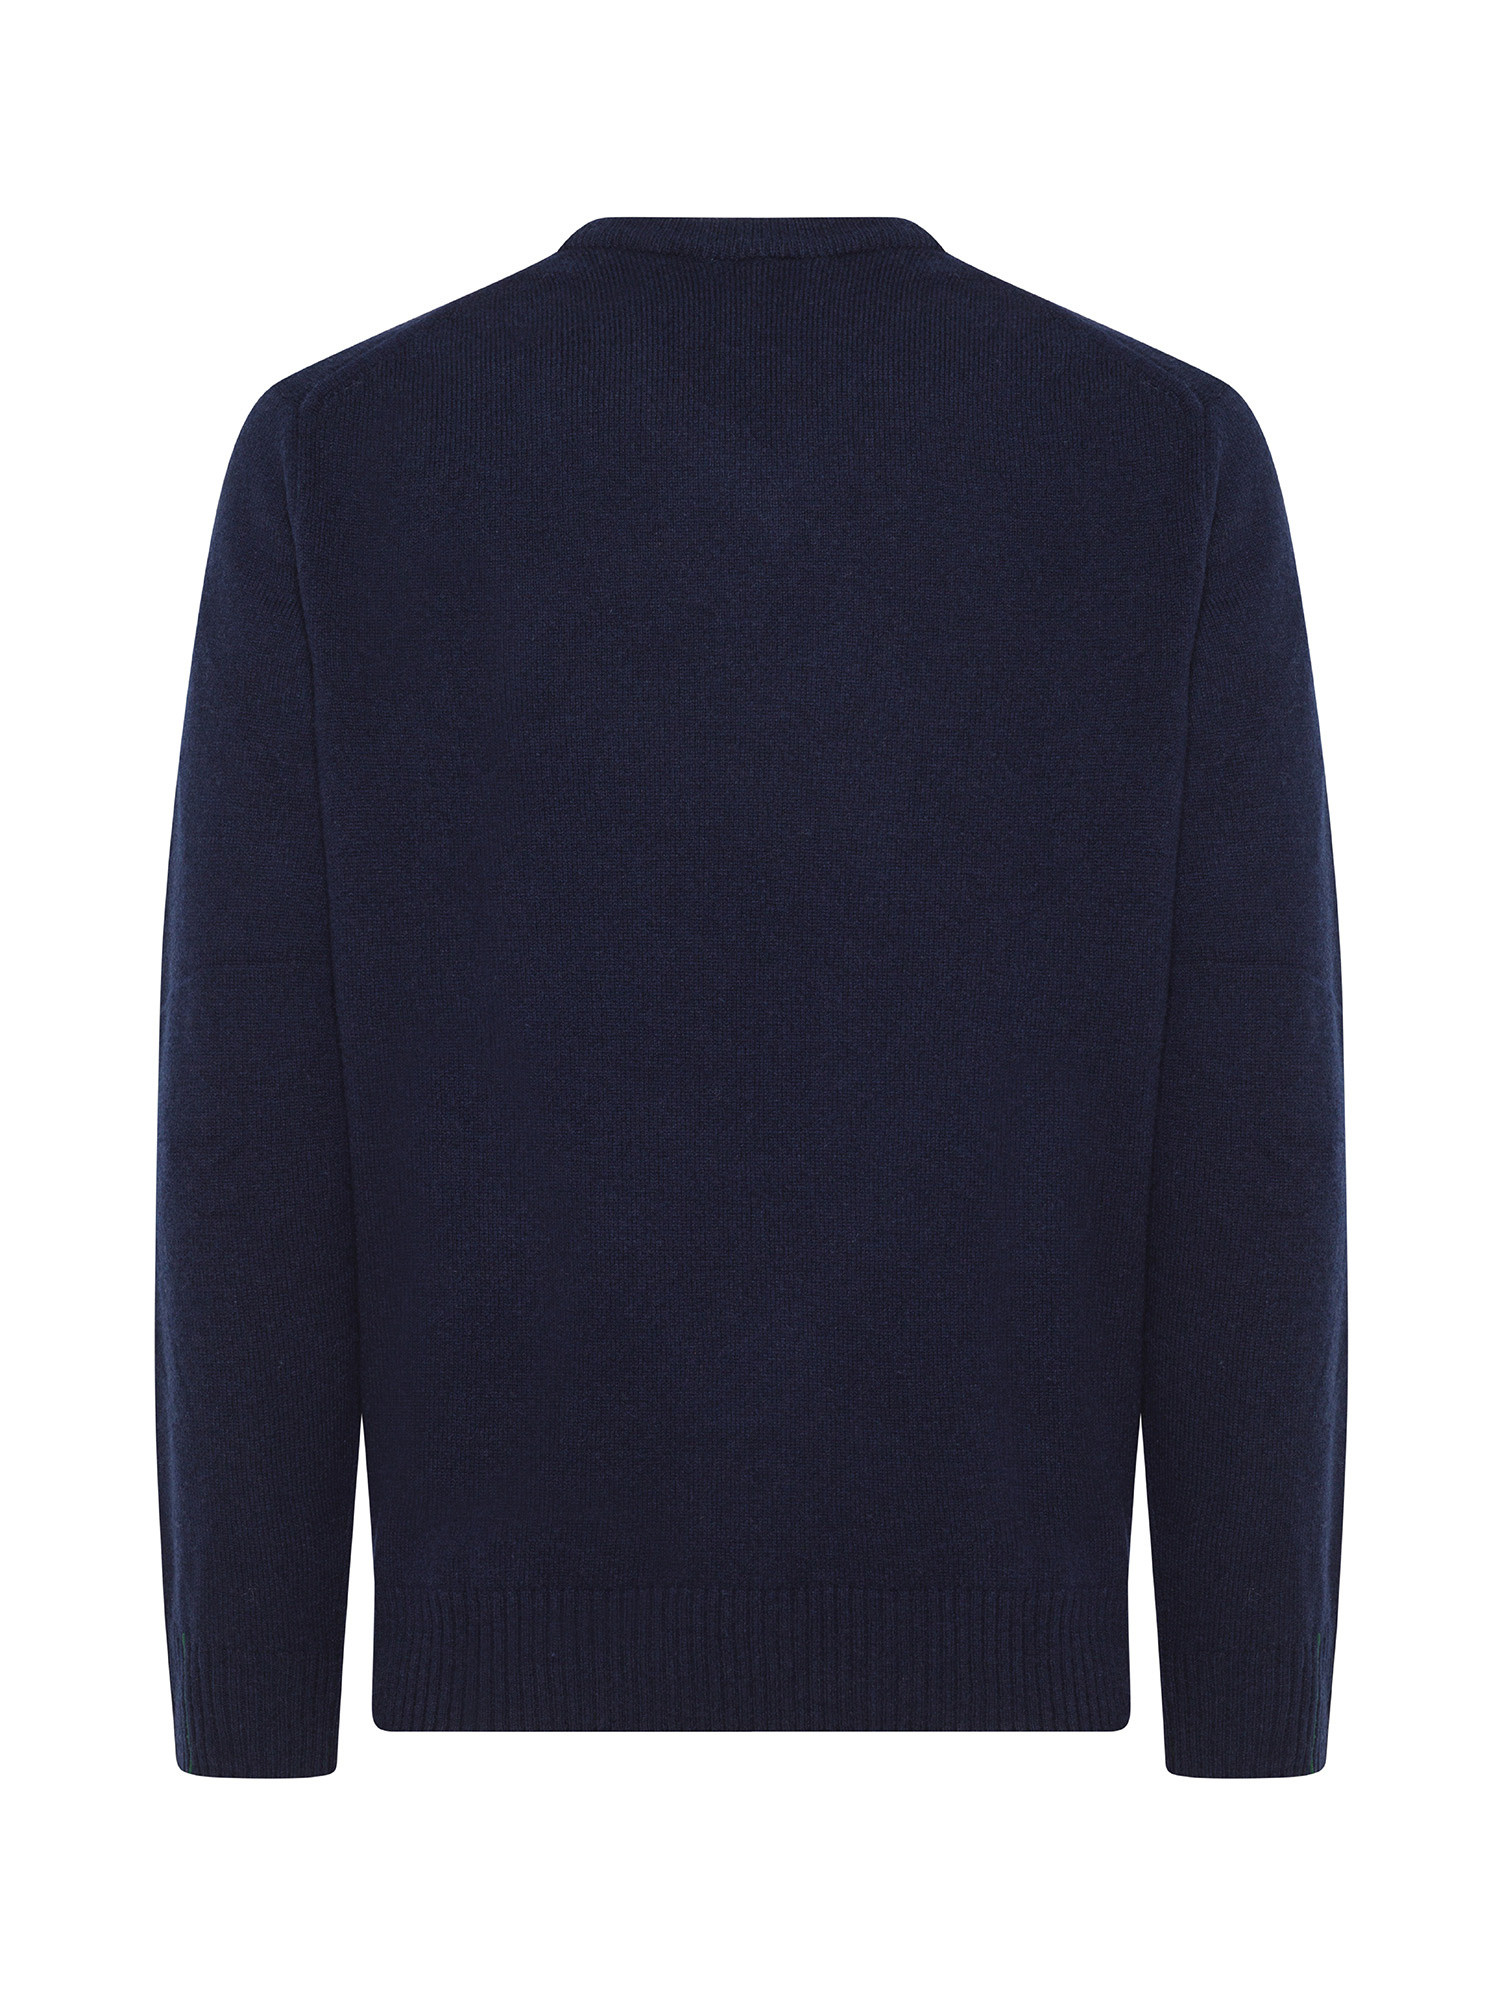 Lacoste - Wool V-neck pullover, Blue, large image number 1